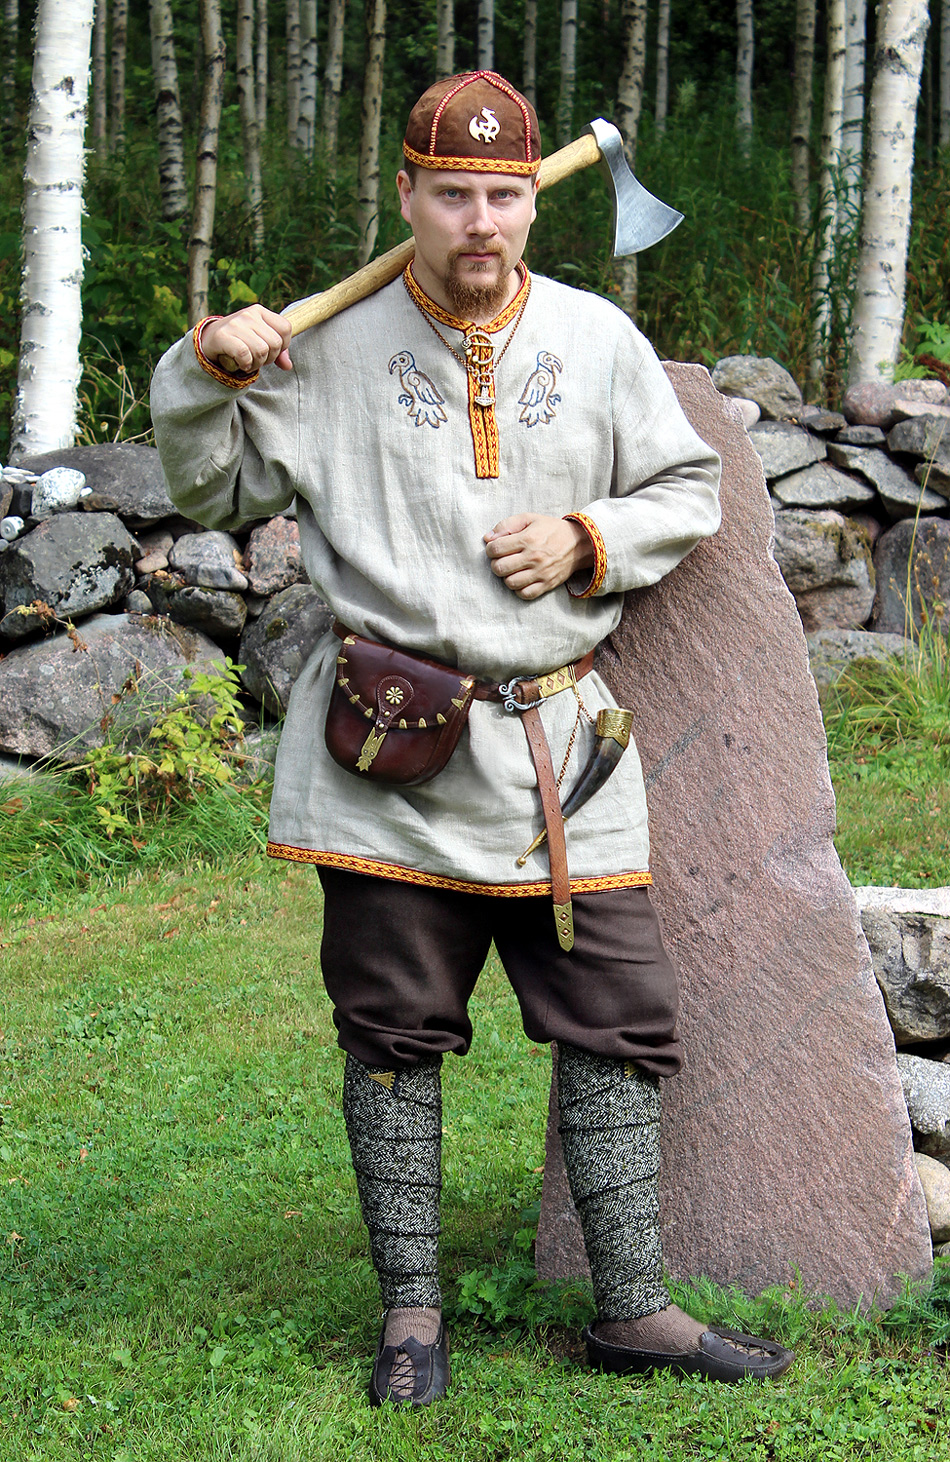 Authentic Viking Costumes